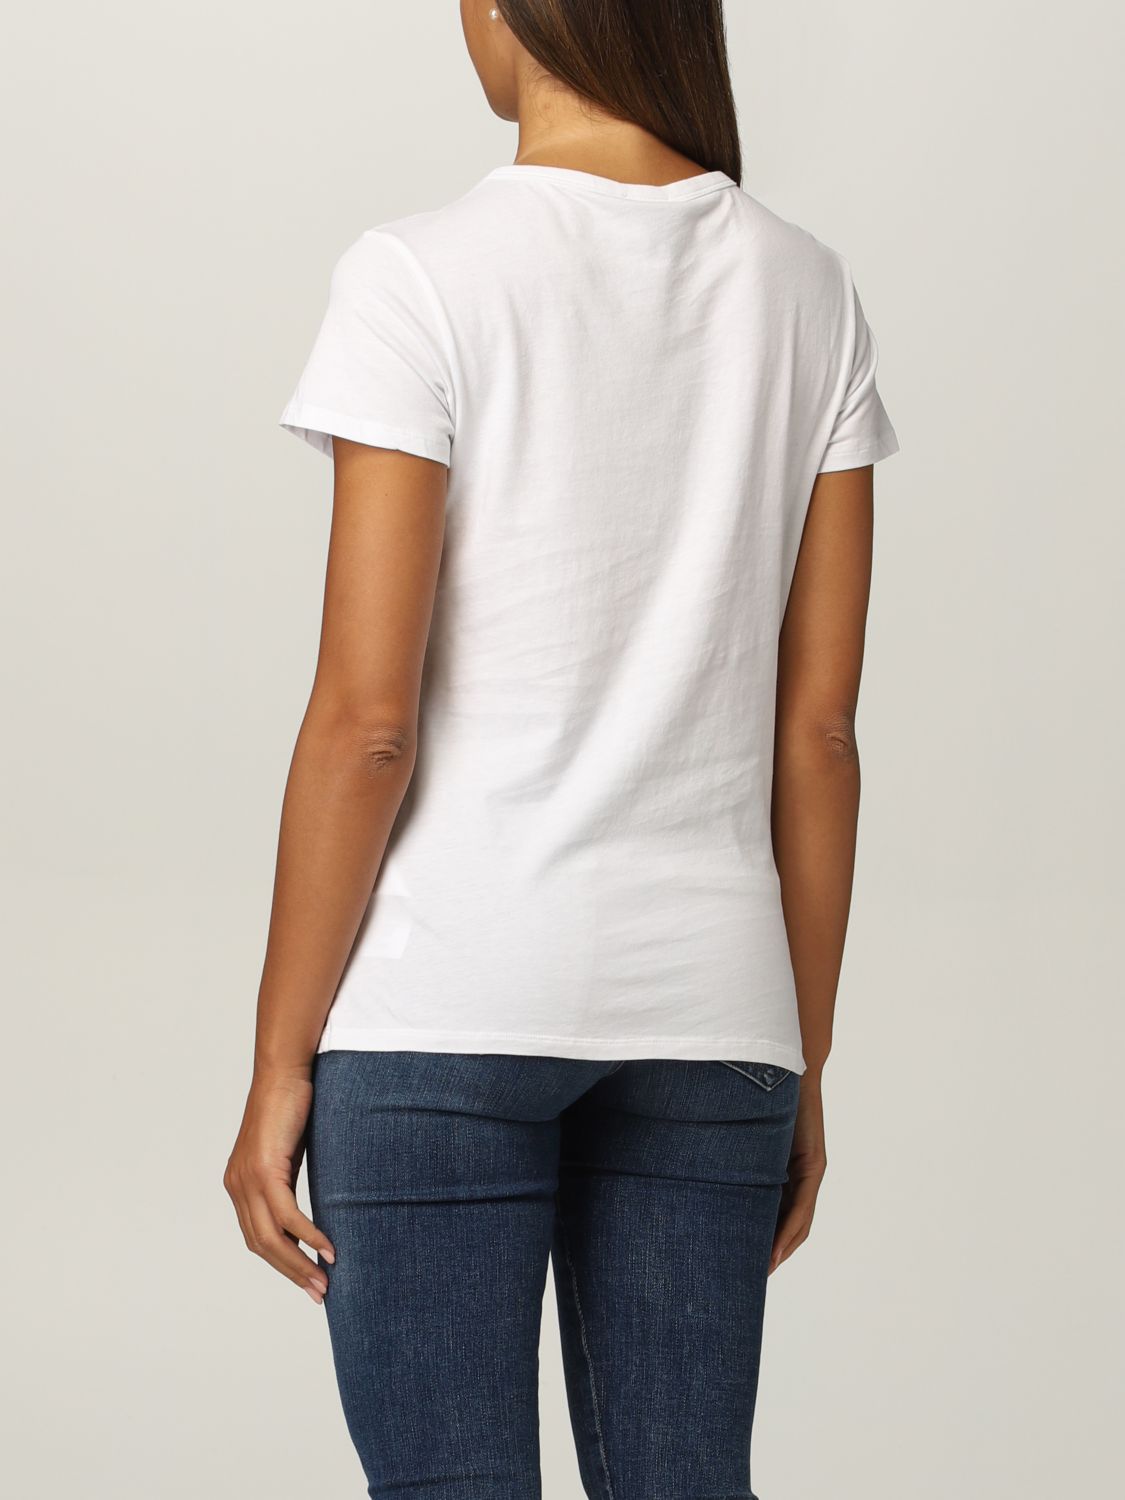 T-Shirt Just Cavalli: T-shirt women Just Cavalli white 2